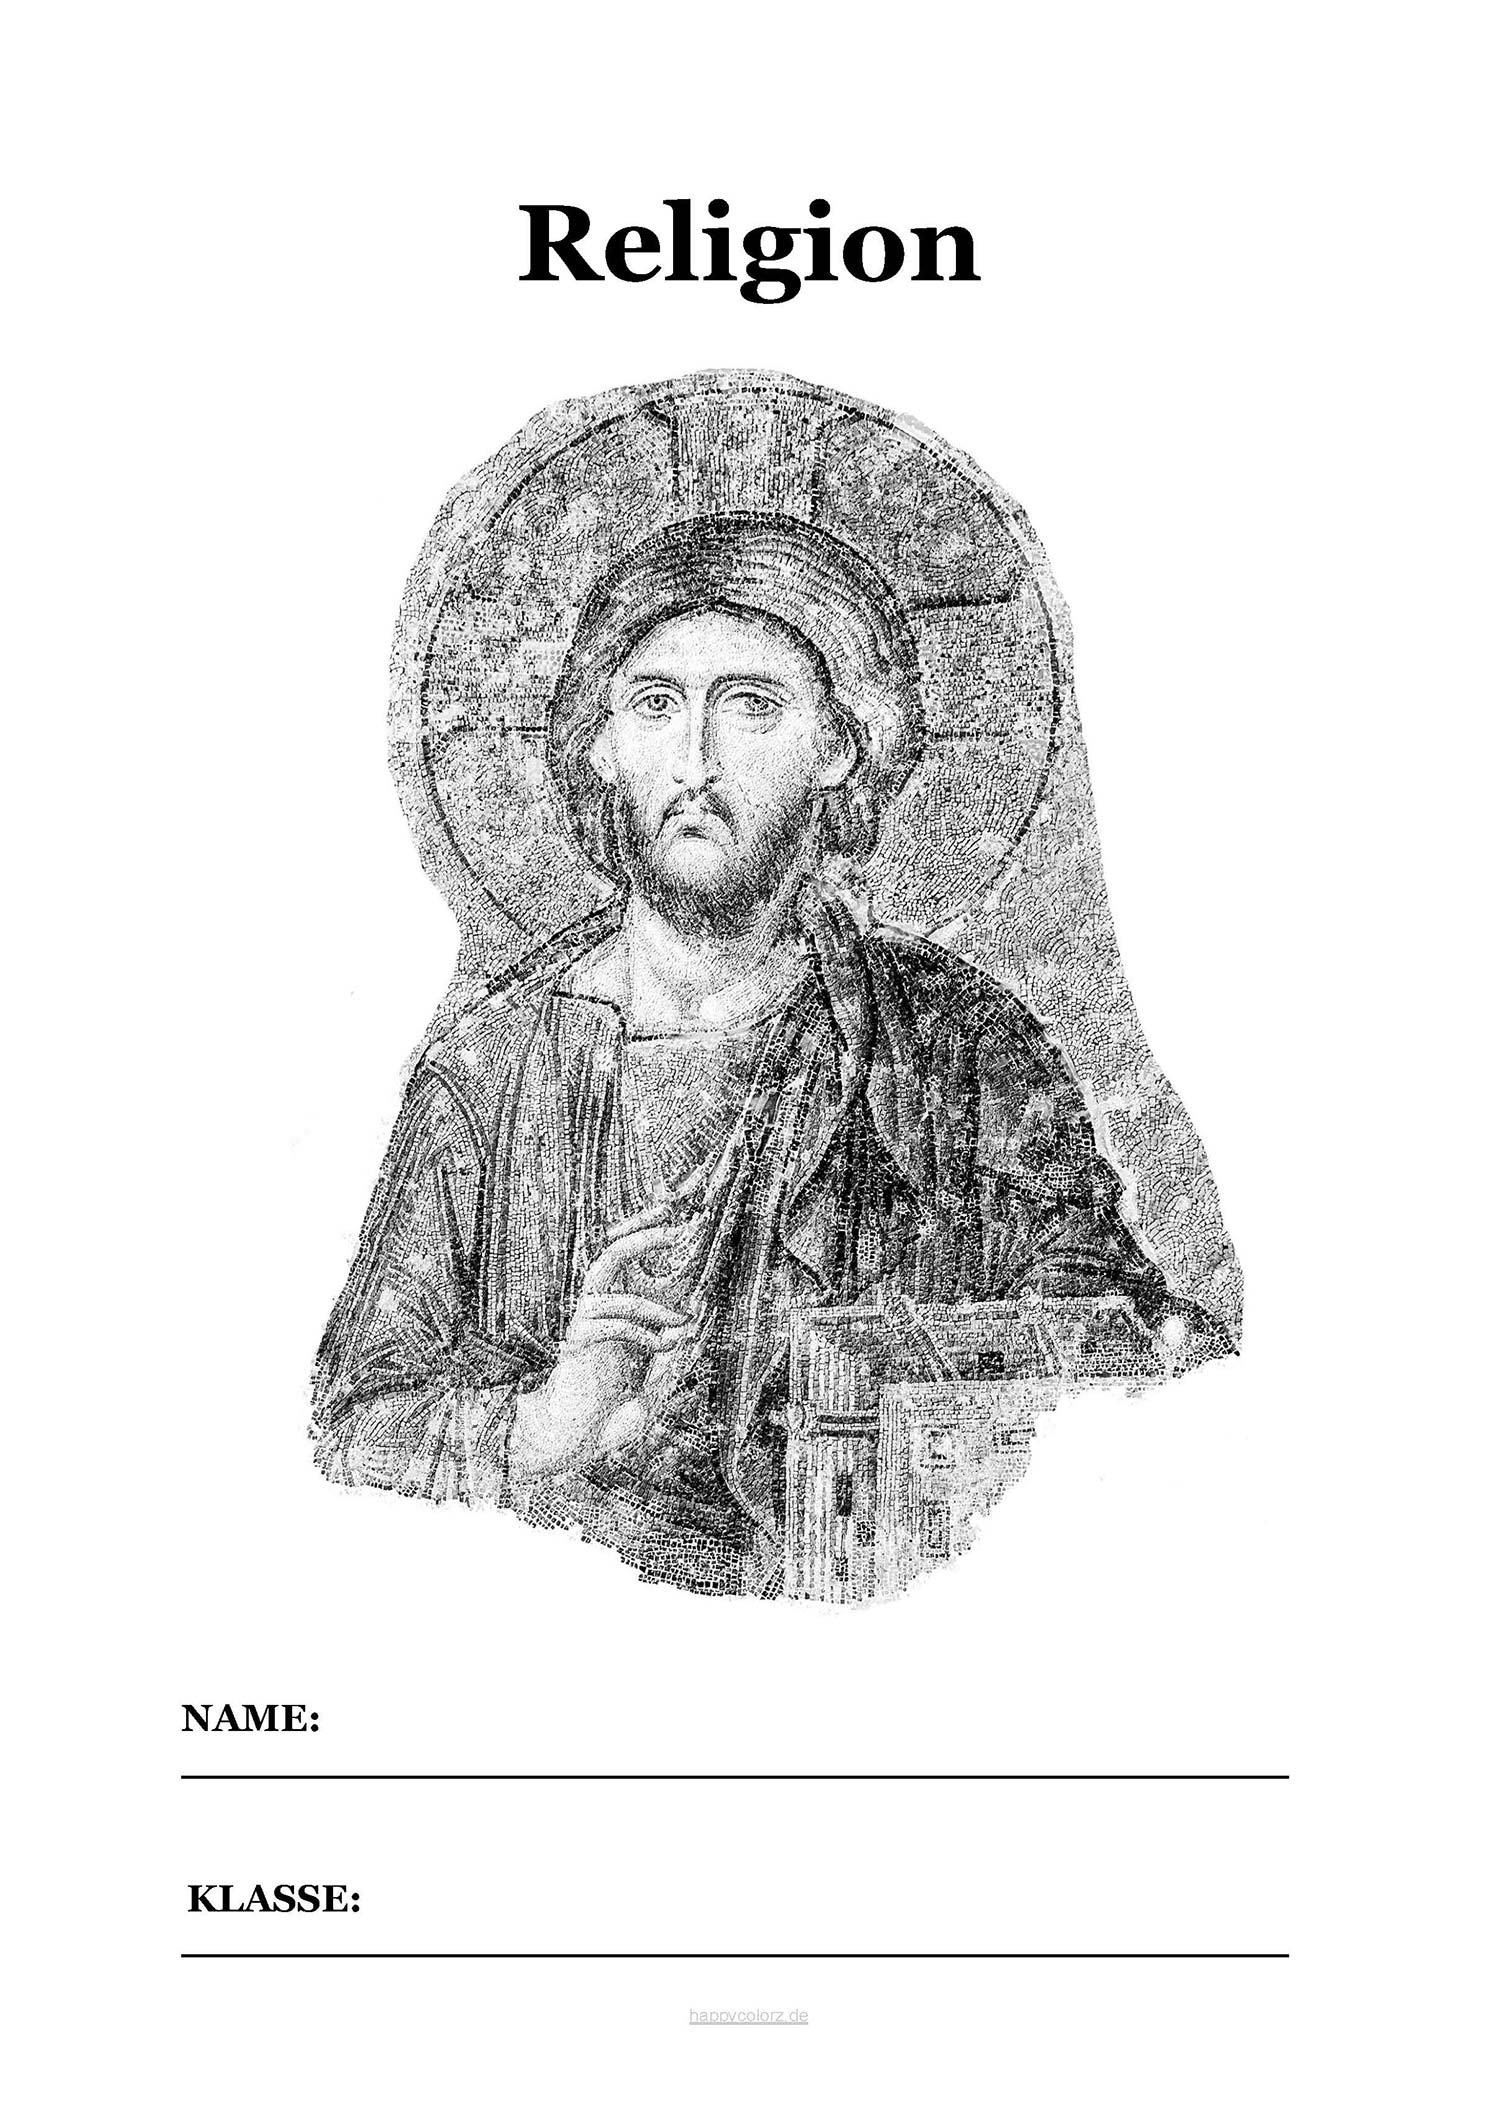 Religion Deckblatt mit Jesus zum kostenlosen ausdrucken (pdf)